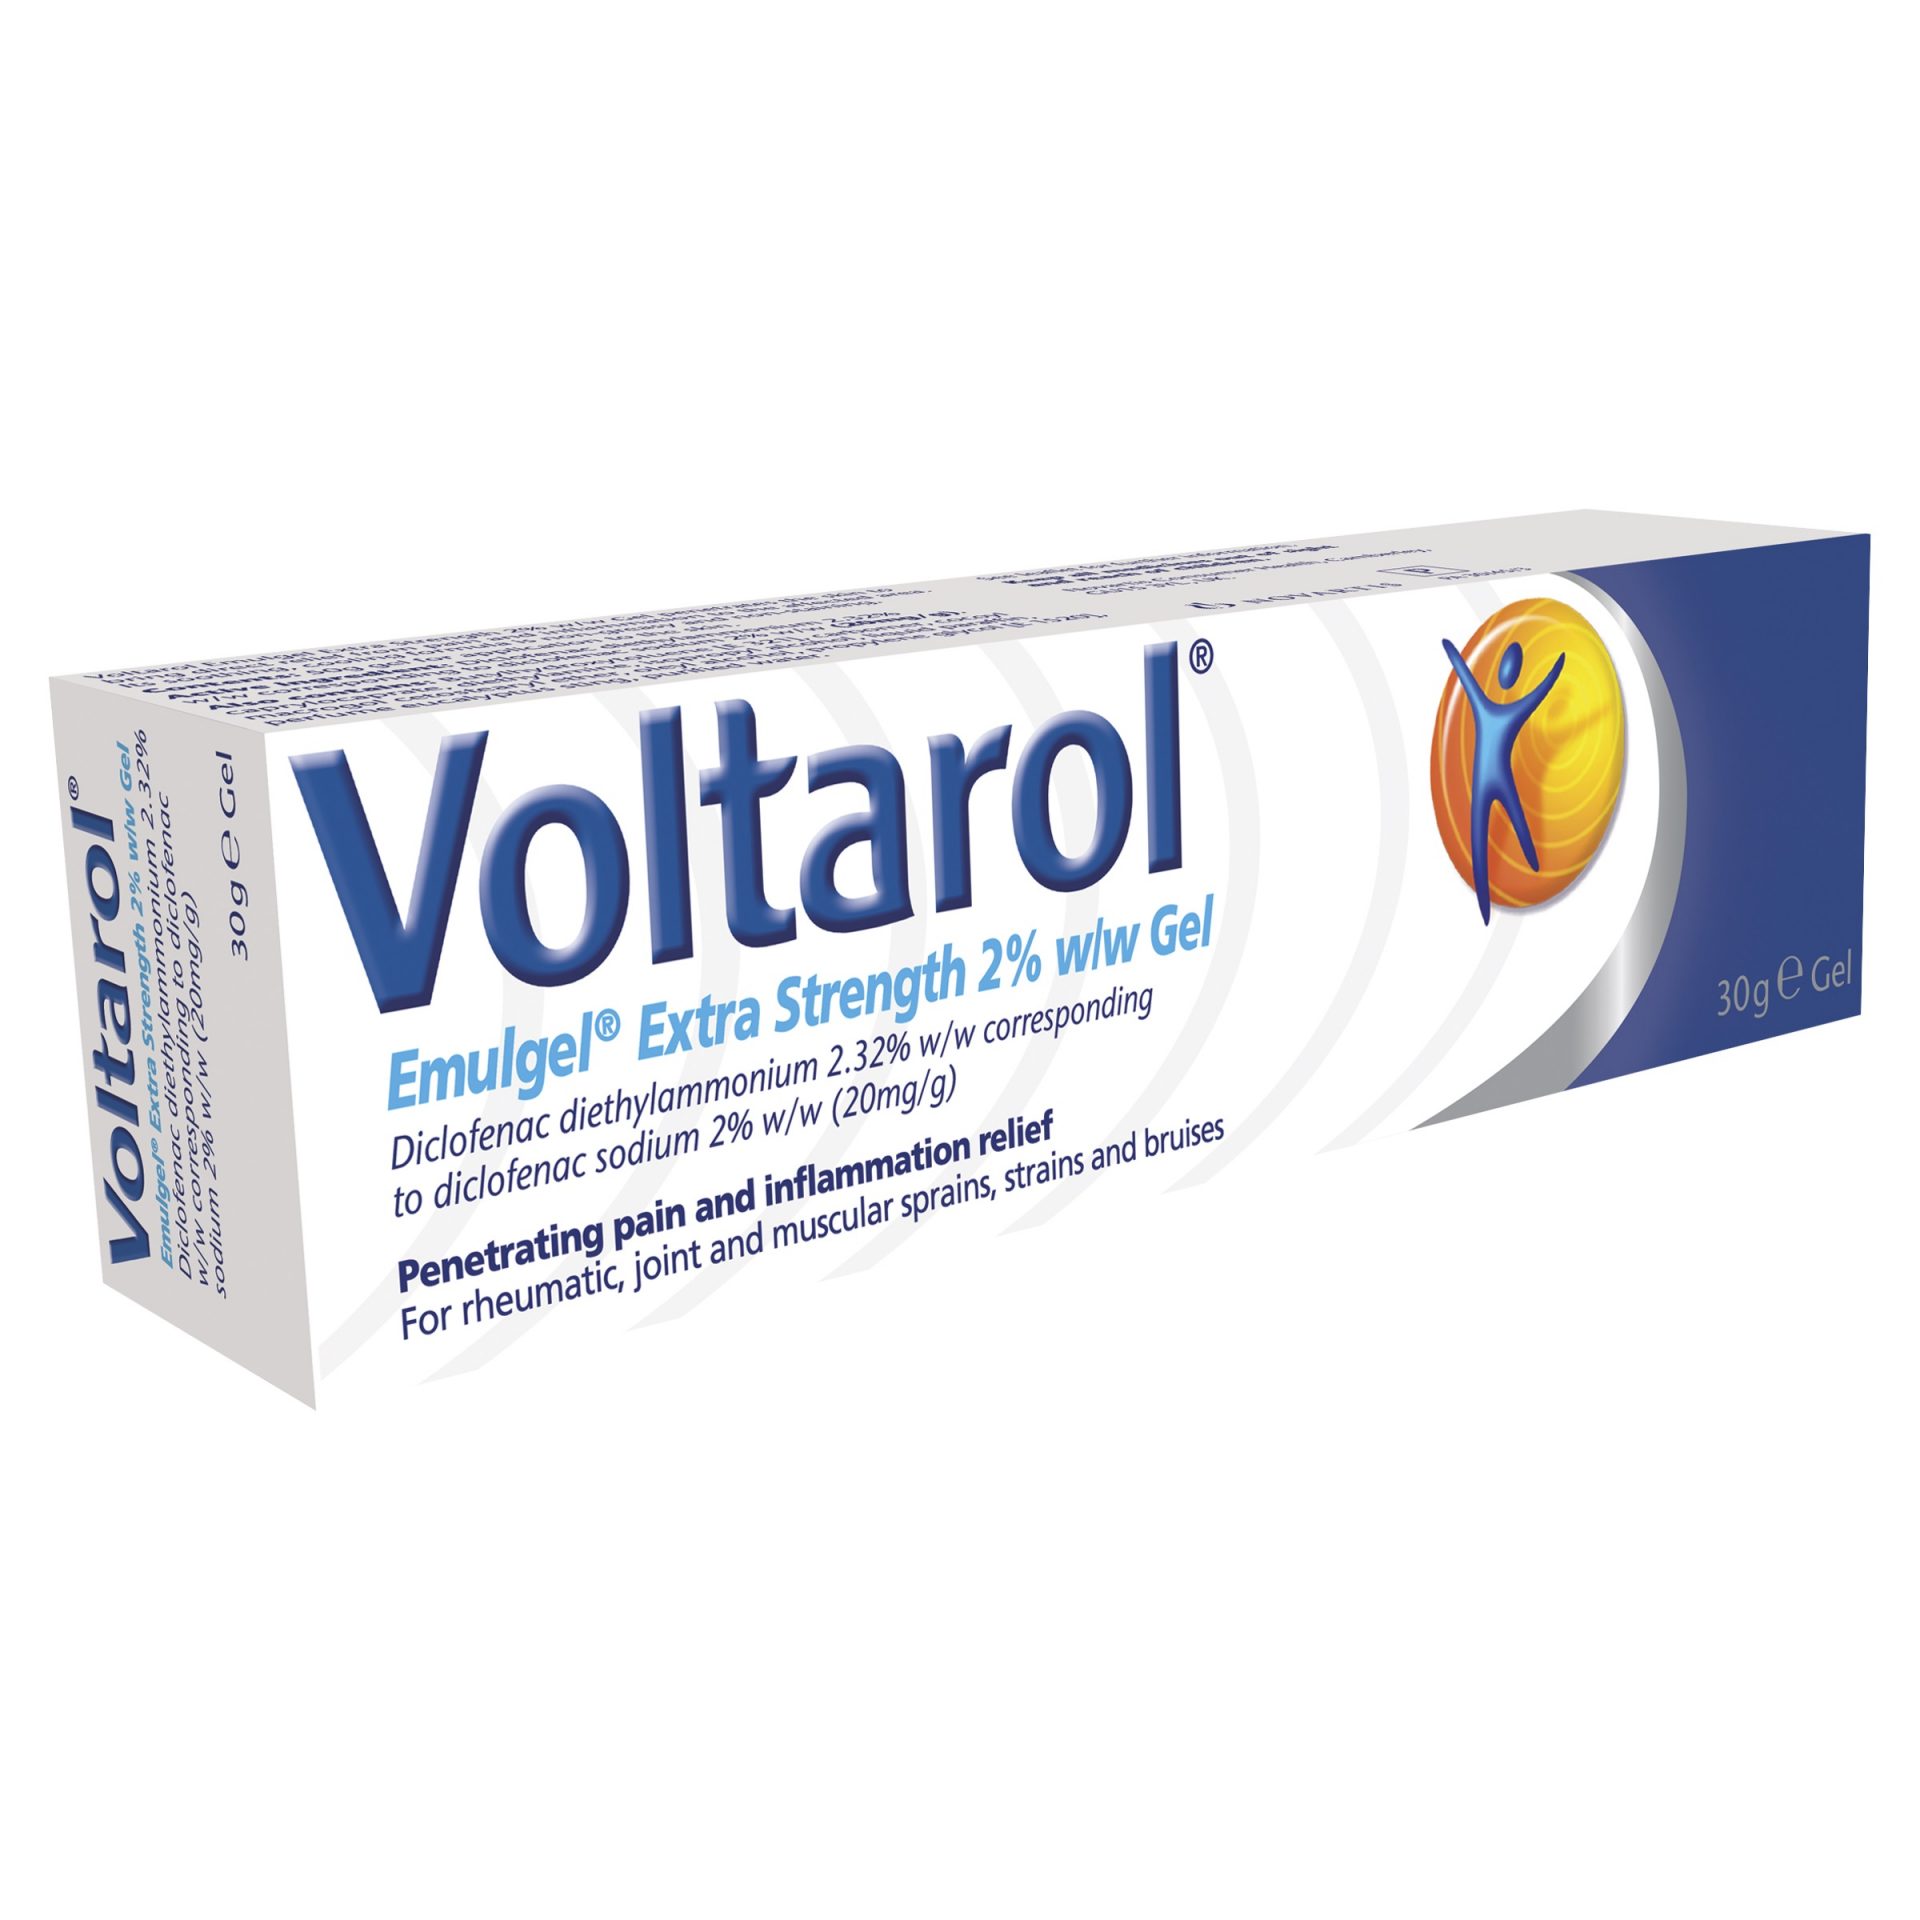 Voltarol Emulgel Extra Strength 2% Gel 30g (Diclofenac) - Pharmacy ...